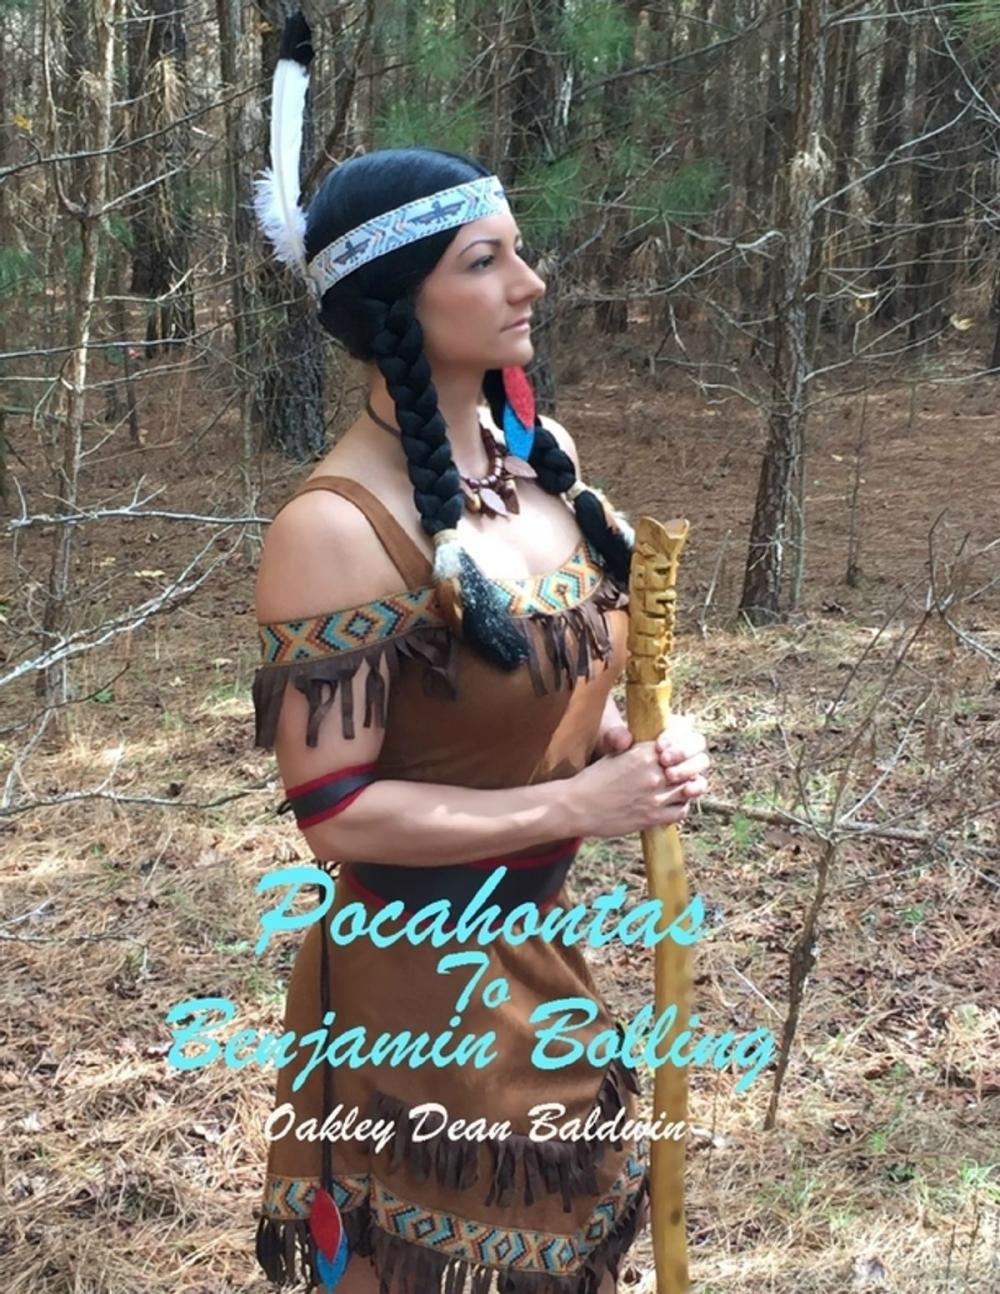 Big bigCover of Pocahontas to Benjamin Bolling